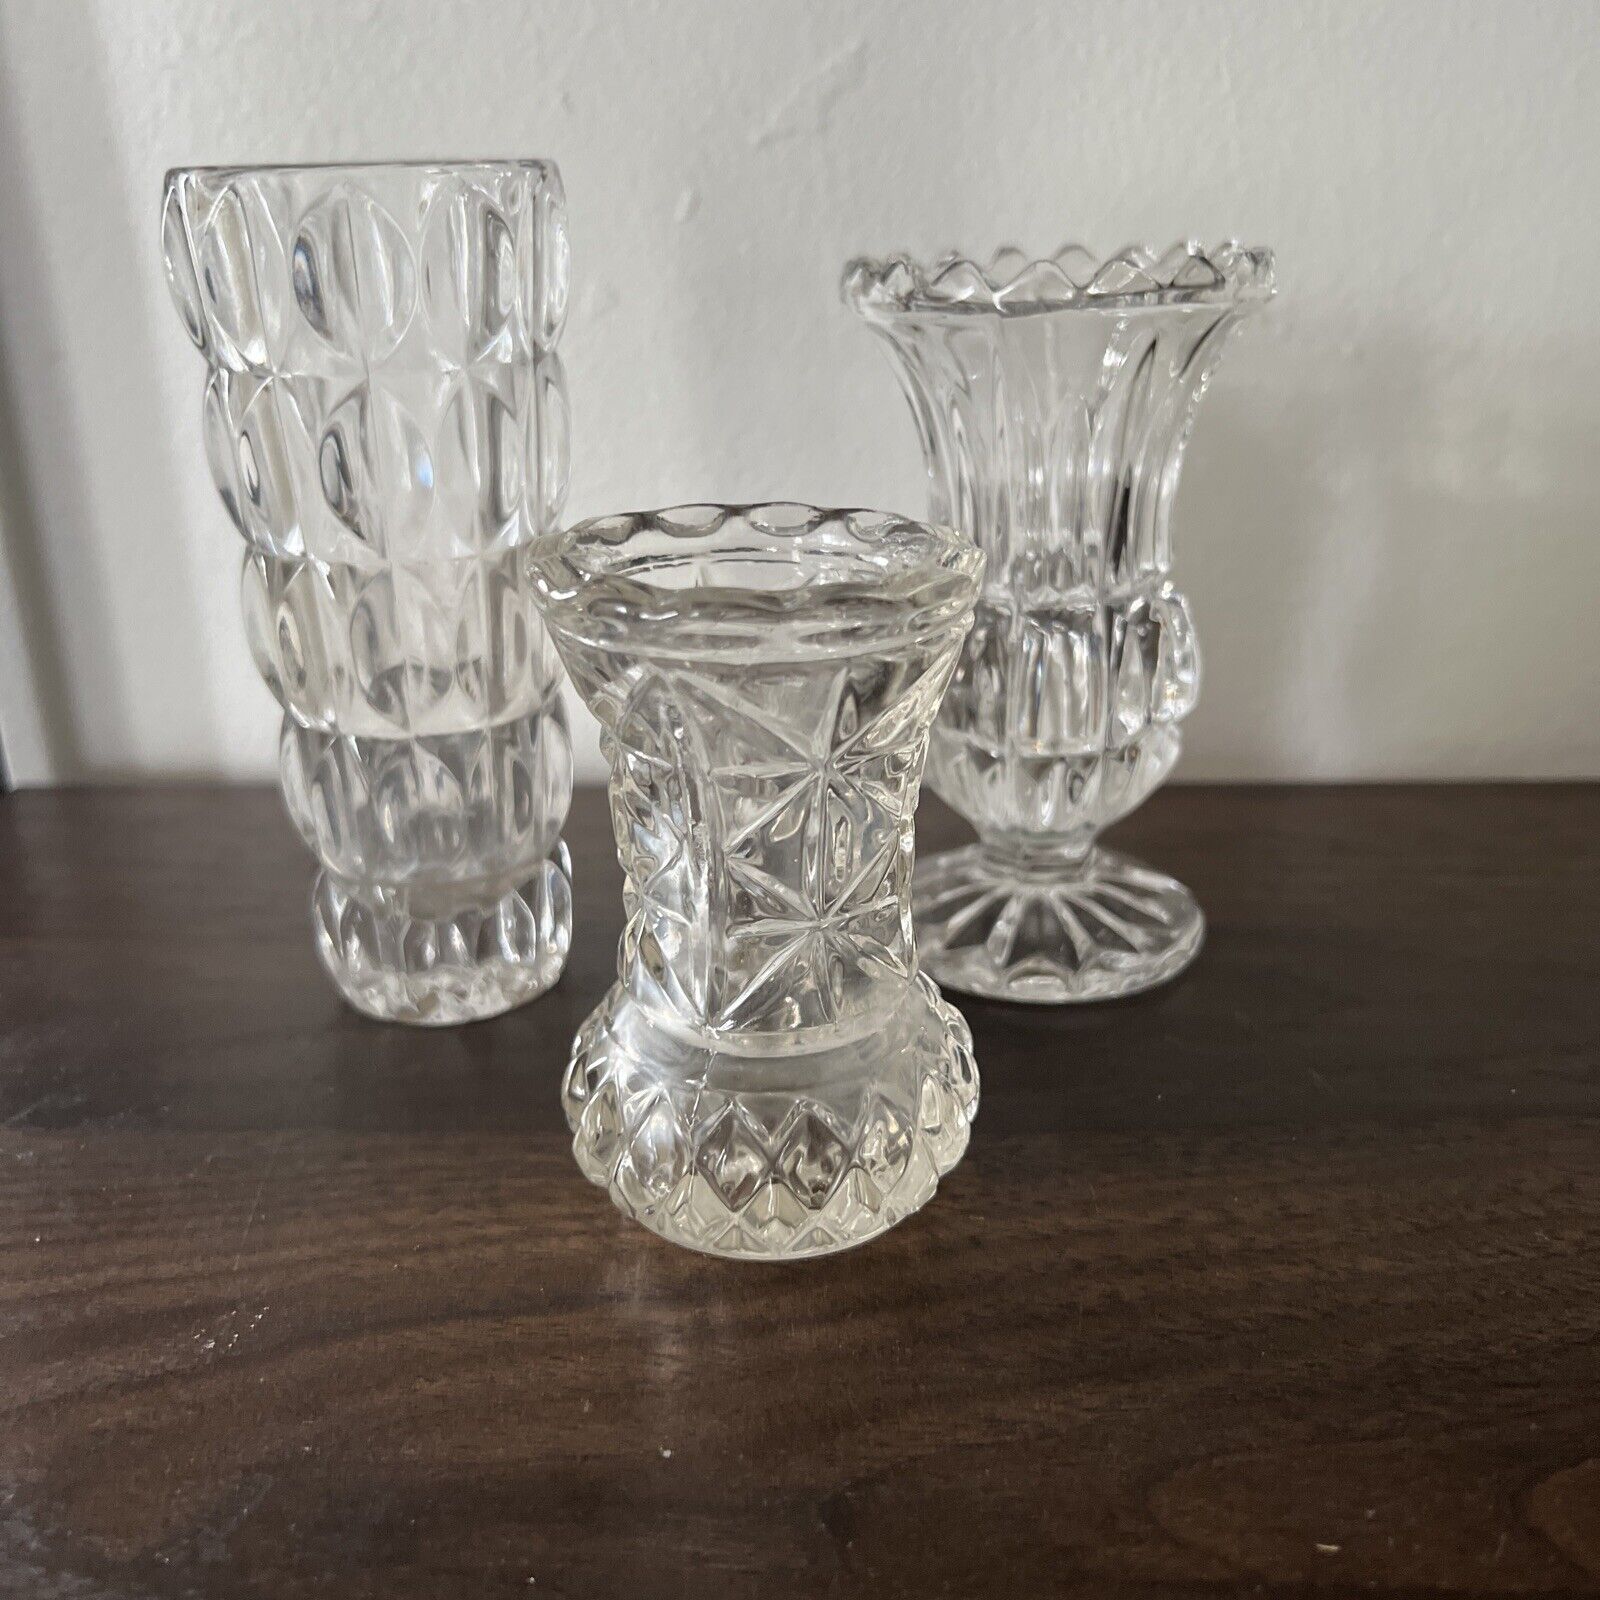 Set of 3 Crystal Glass Small Mini Pineapple Shaped Bud Vase Art Decor, Vintage